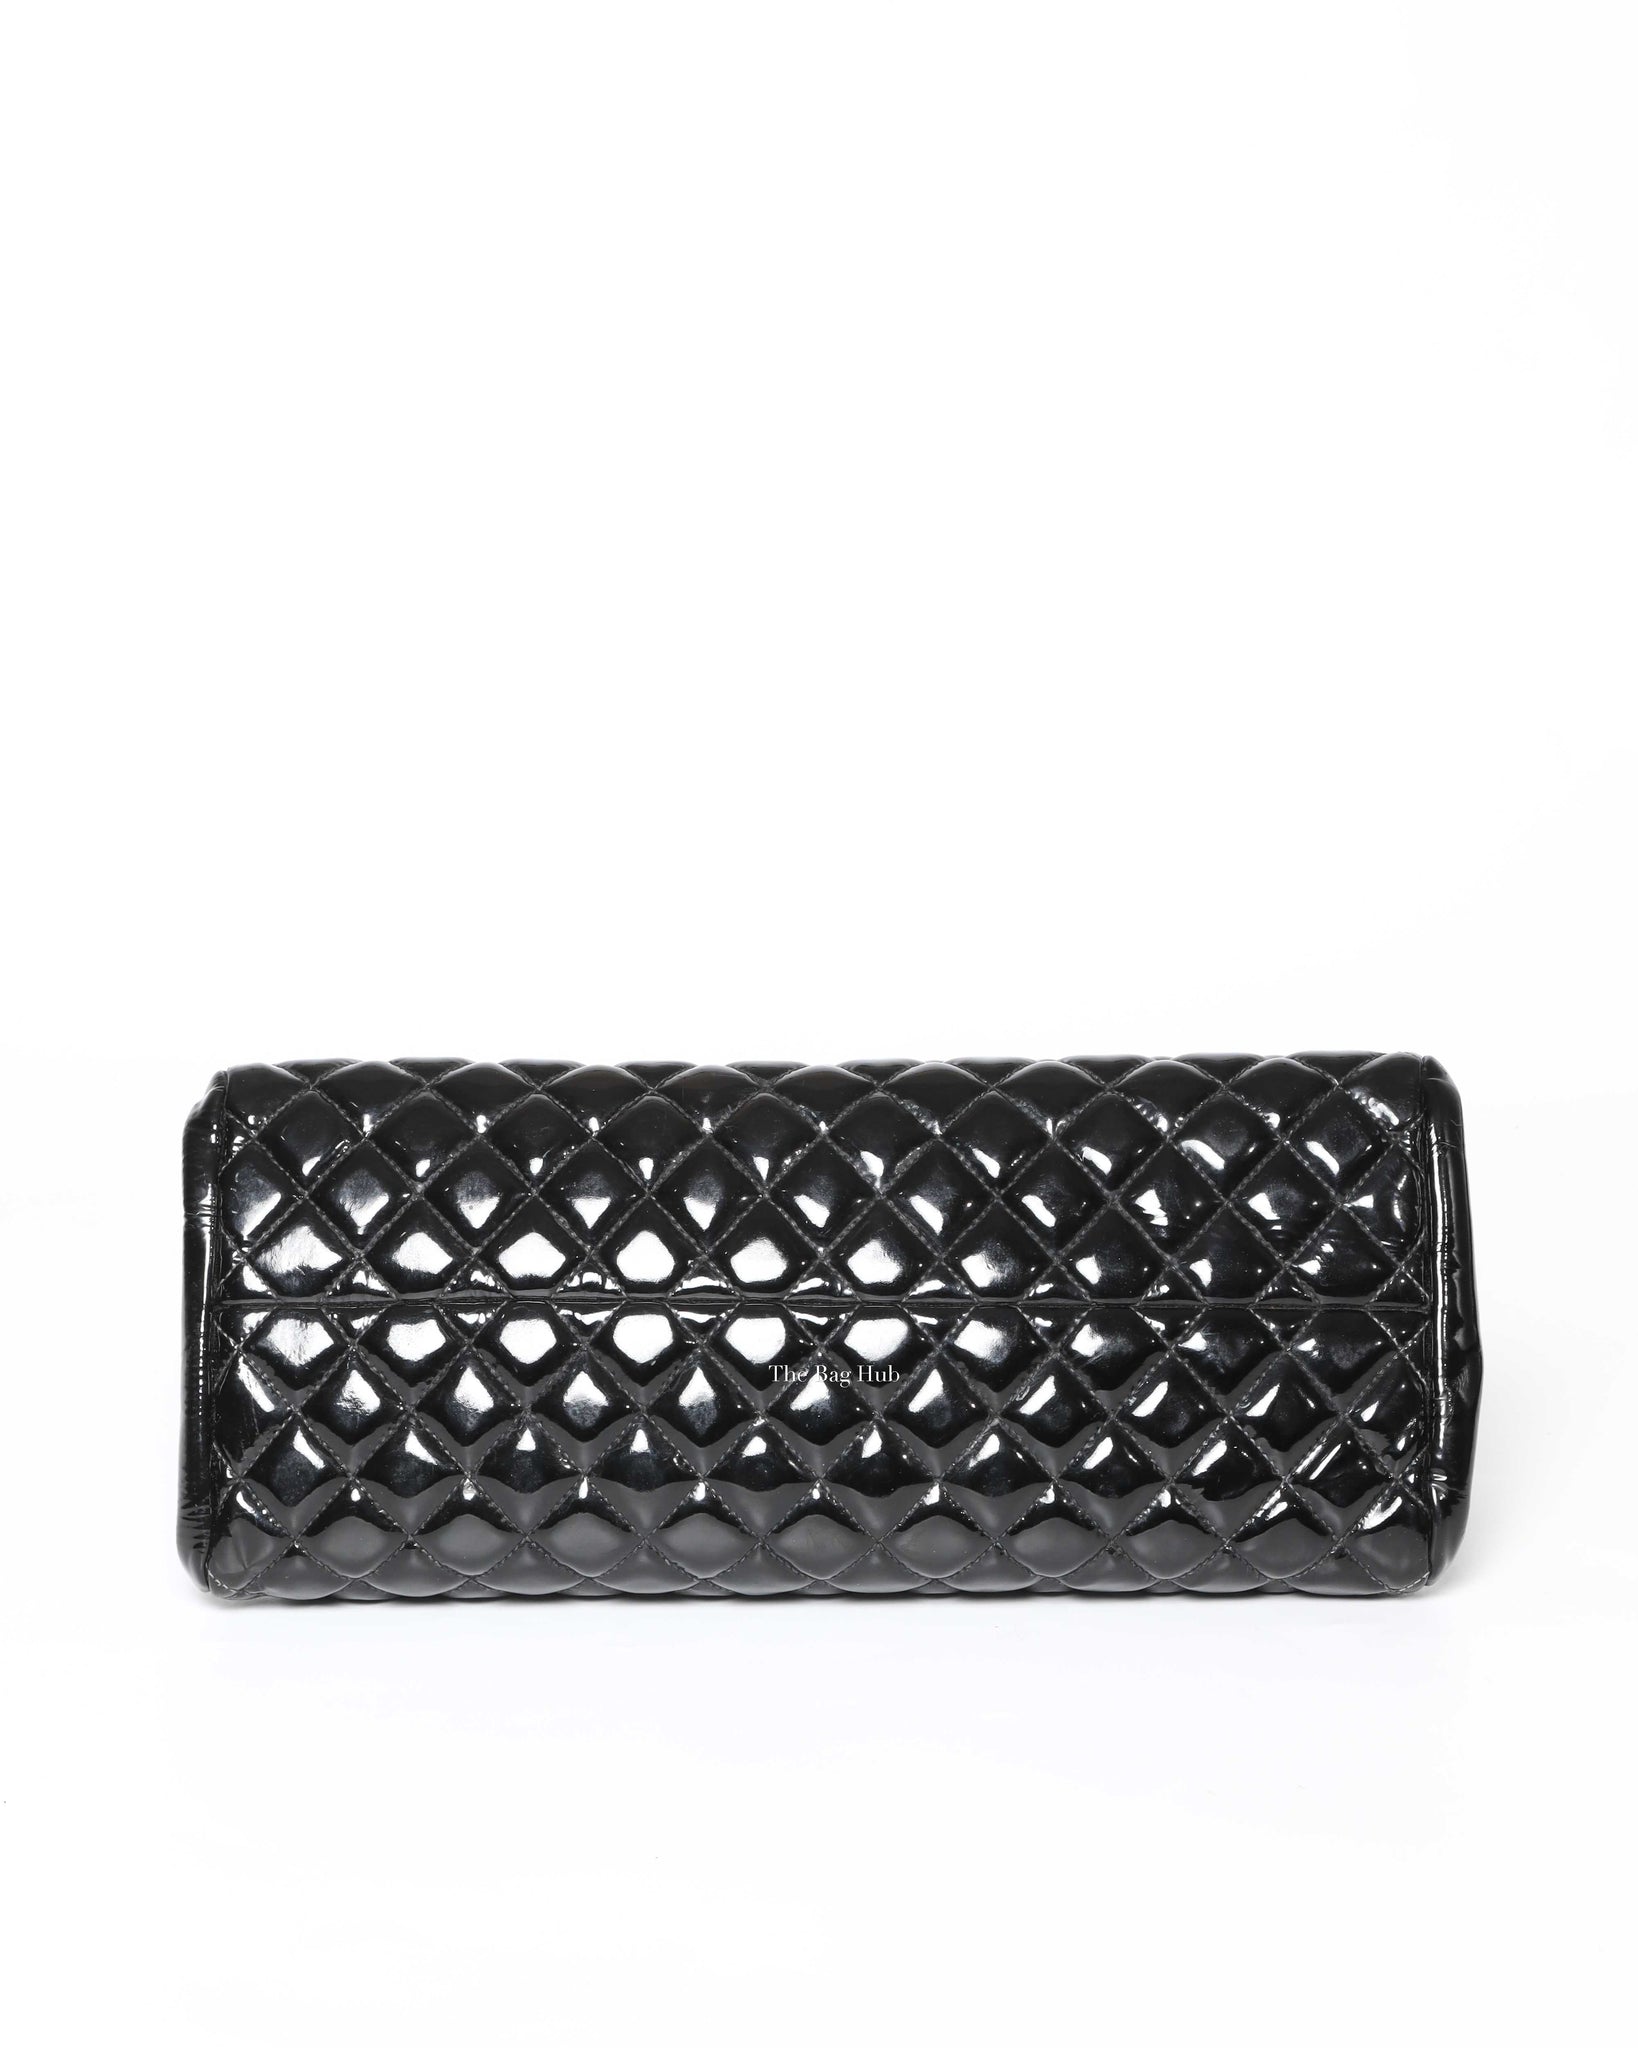 Chanel Black Patent Mademoiselle Shoulder Bag SHW - 5